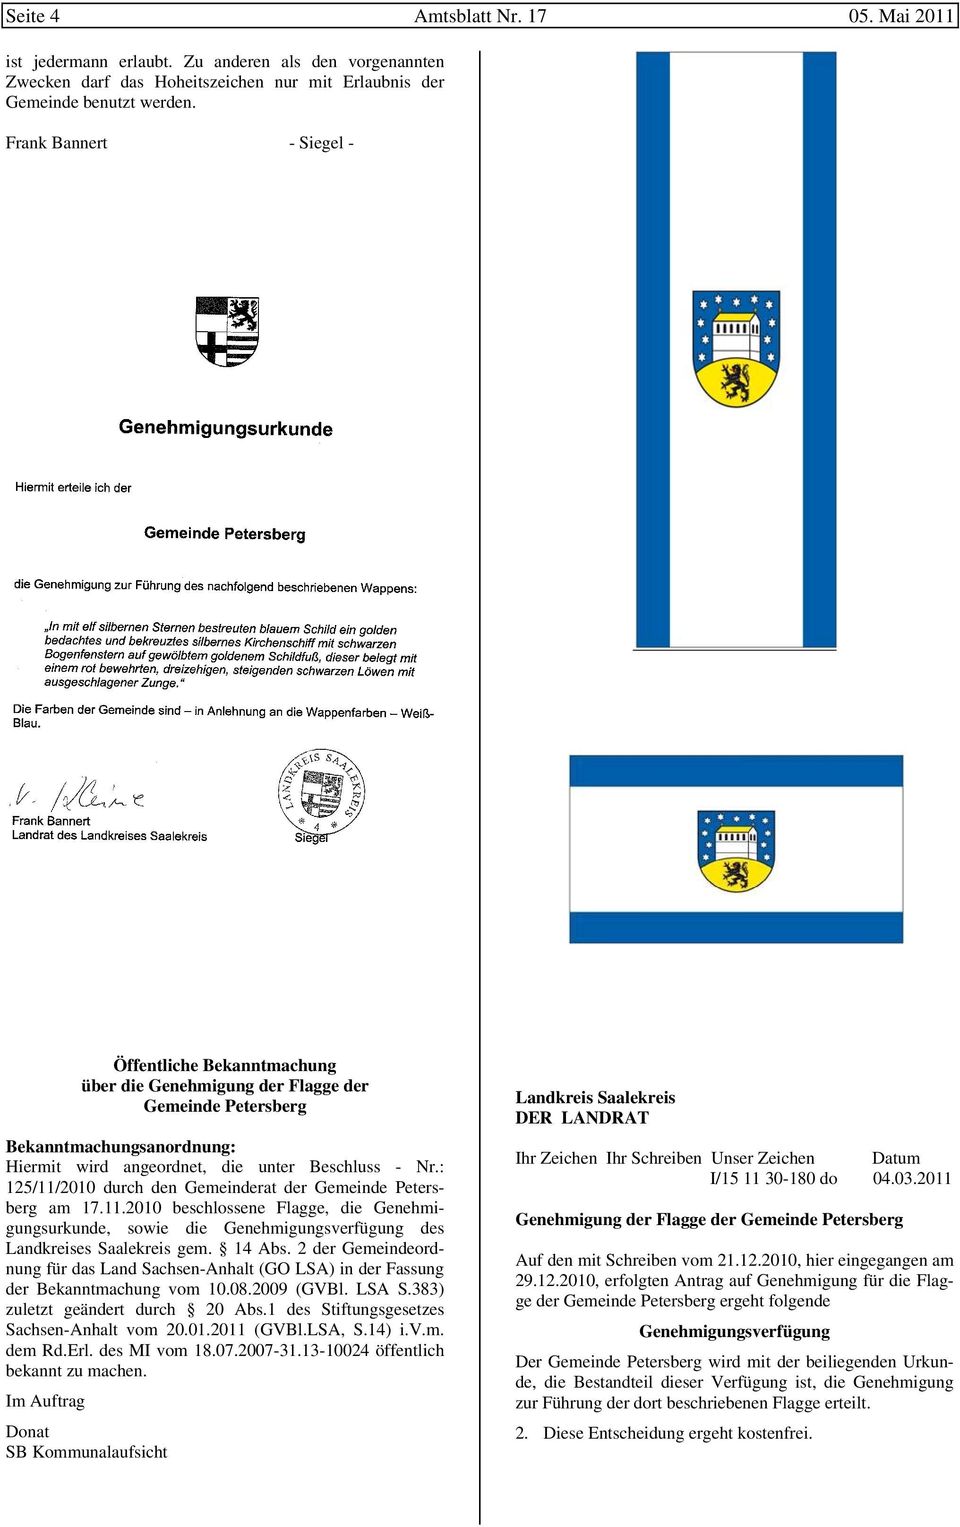 : 125/11/2010 durch den Gemeinderat der Gemeinde Petersberg am 17.11.2010 beschlossene Flagge, die Genehmigungsurkunde, sowie die Genehmigungsverfügung des Landkreises Saalekreis gem. 14 Abs.